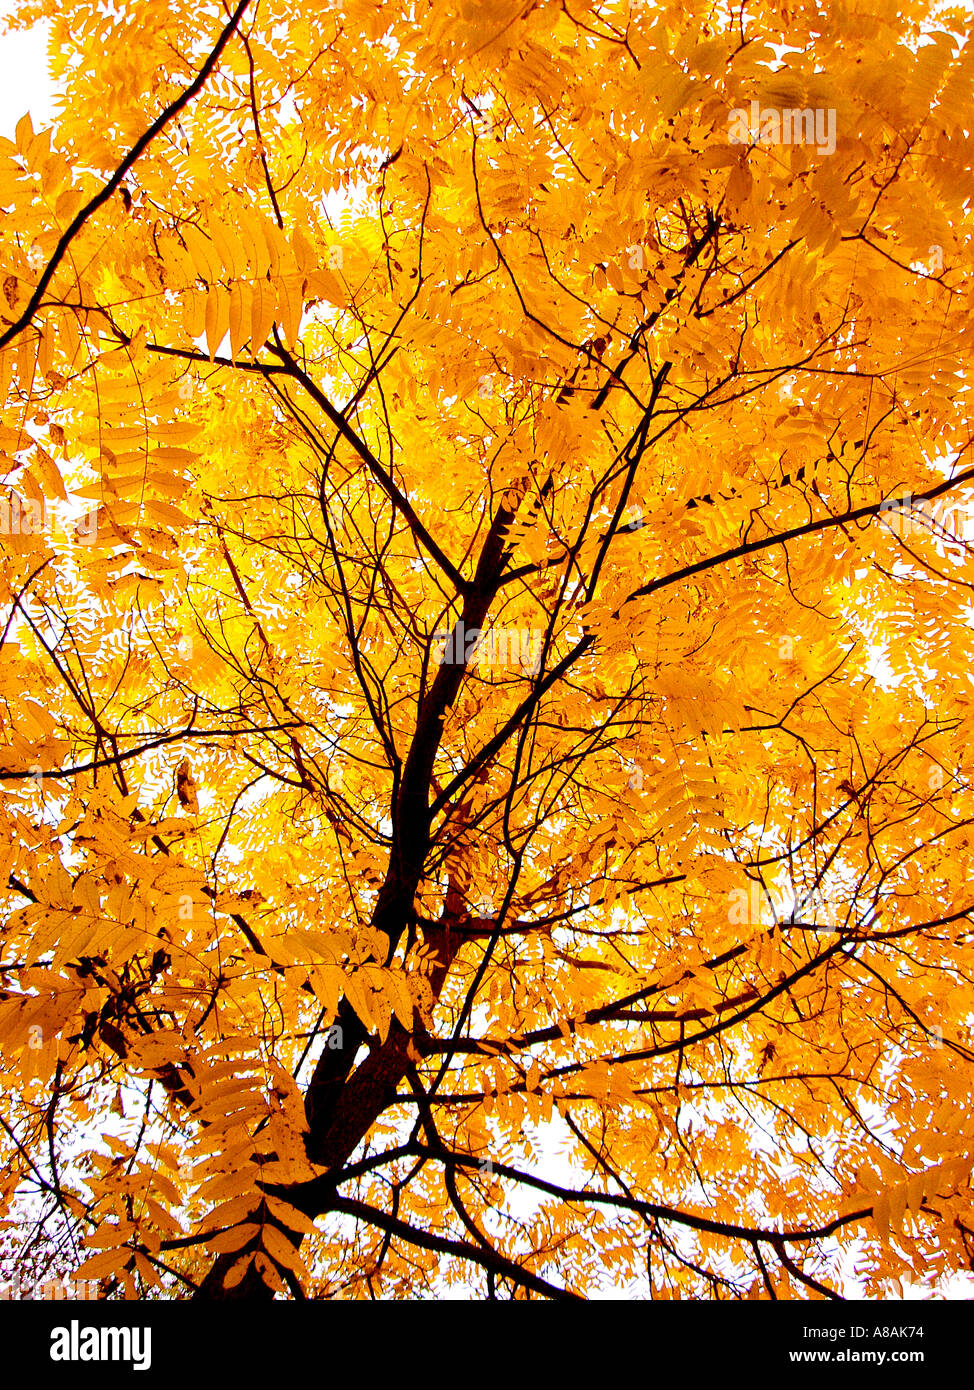 Herbst Baum mit gelben Blättern Baum Mit Klingebiel Feierstimmung Im Herbst Stockfoto